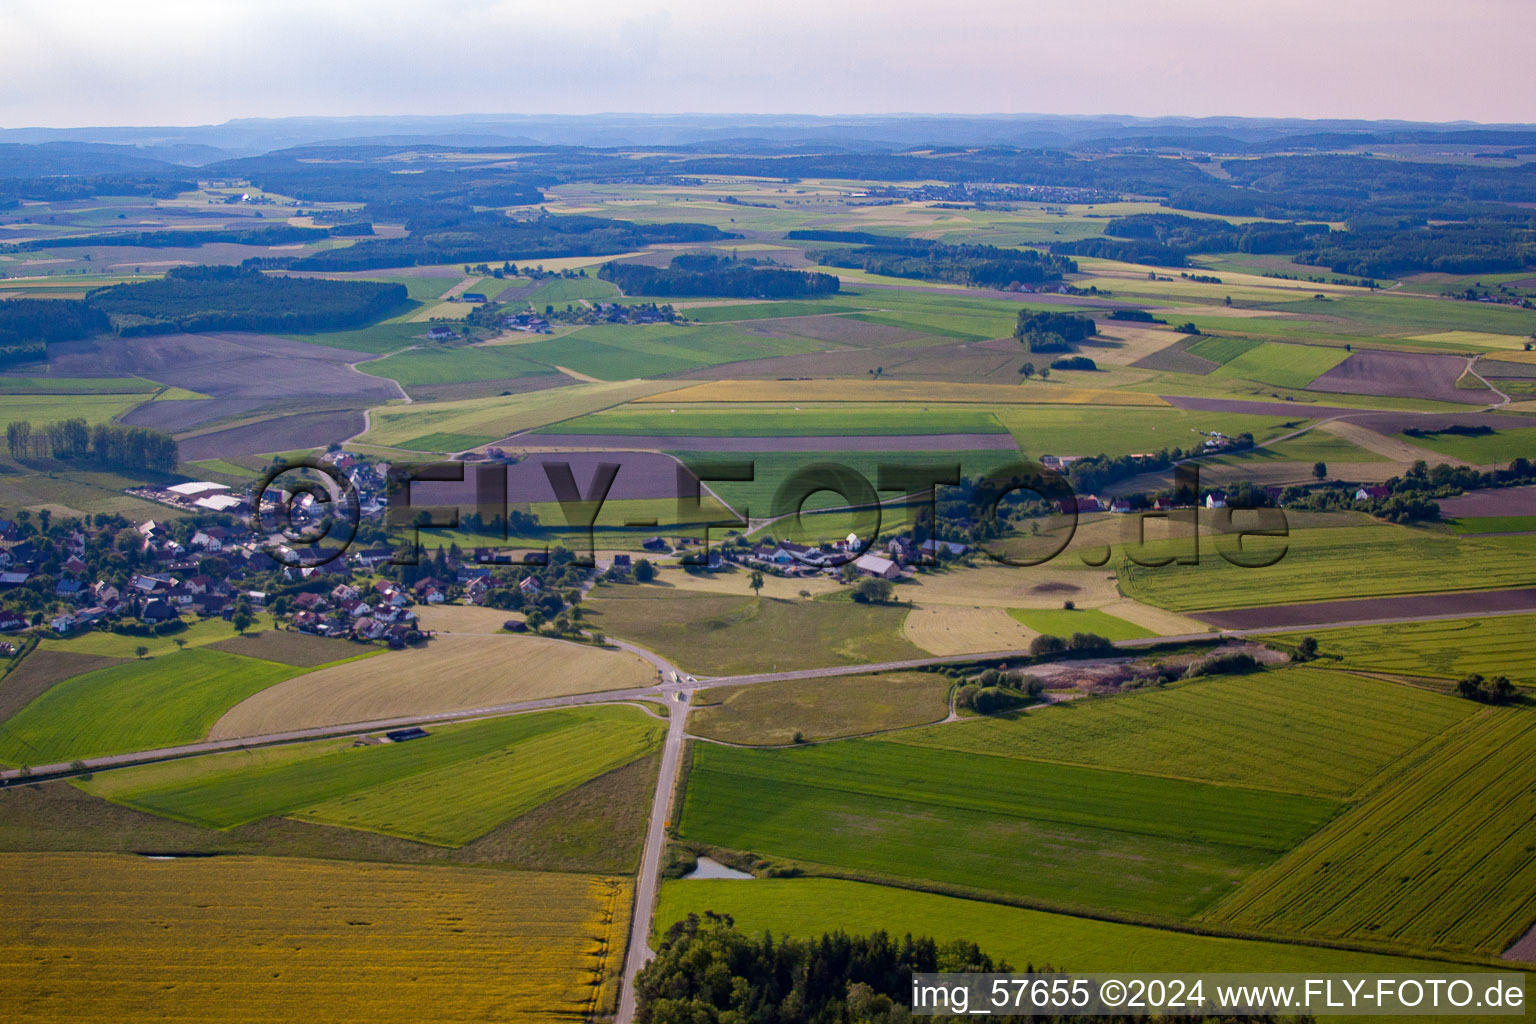 Vue aérienne de Site d'atterrissage spécial à Boll dans le département Bade-Wurtemberg, Allemagne